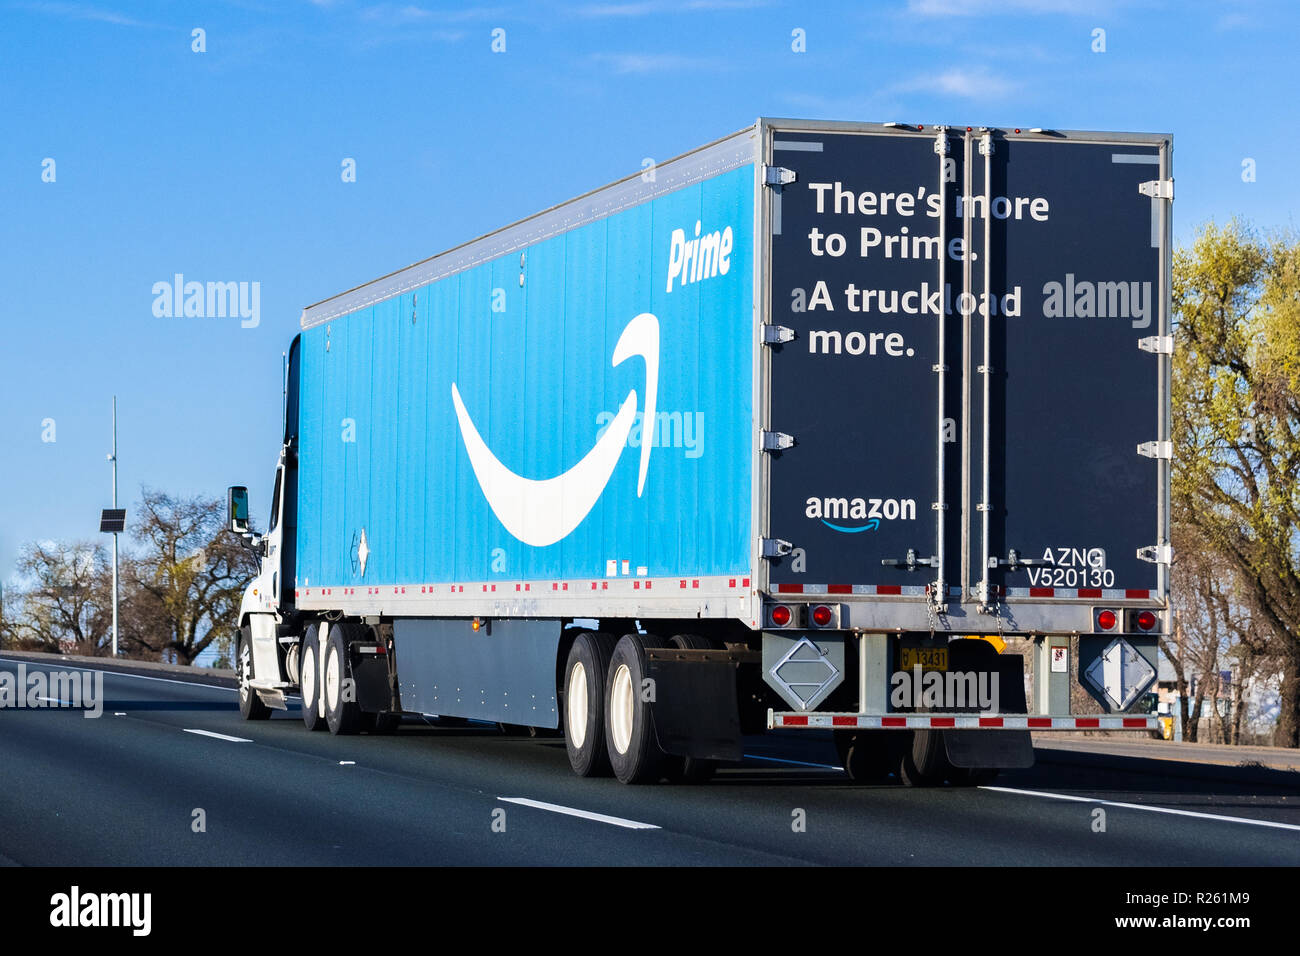 El 22 de marzo de 2018, Stockton / CA / USA - Amazon la conducción de camiones en la carretera, el primer logotipo grande impreso en el lateral Foto de stock